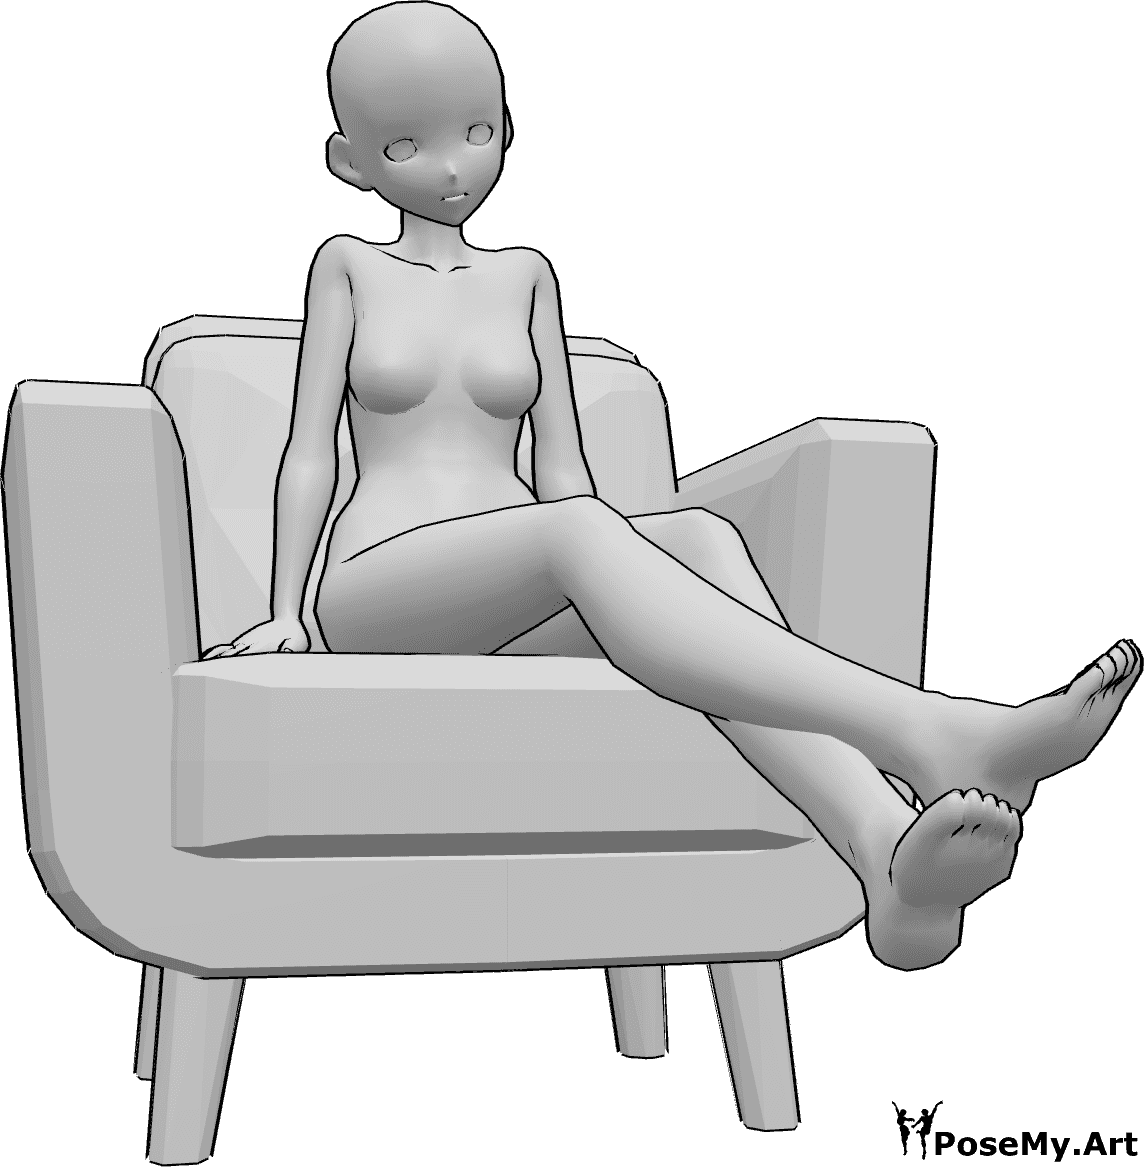 Posen-Referenz- Anime Beine heben Pose - Anime-Frau sitzt im Sessel und hebt die Beine